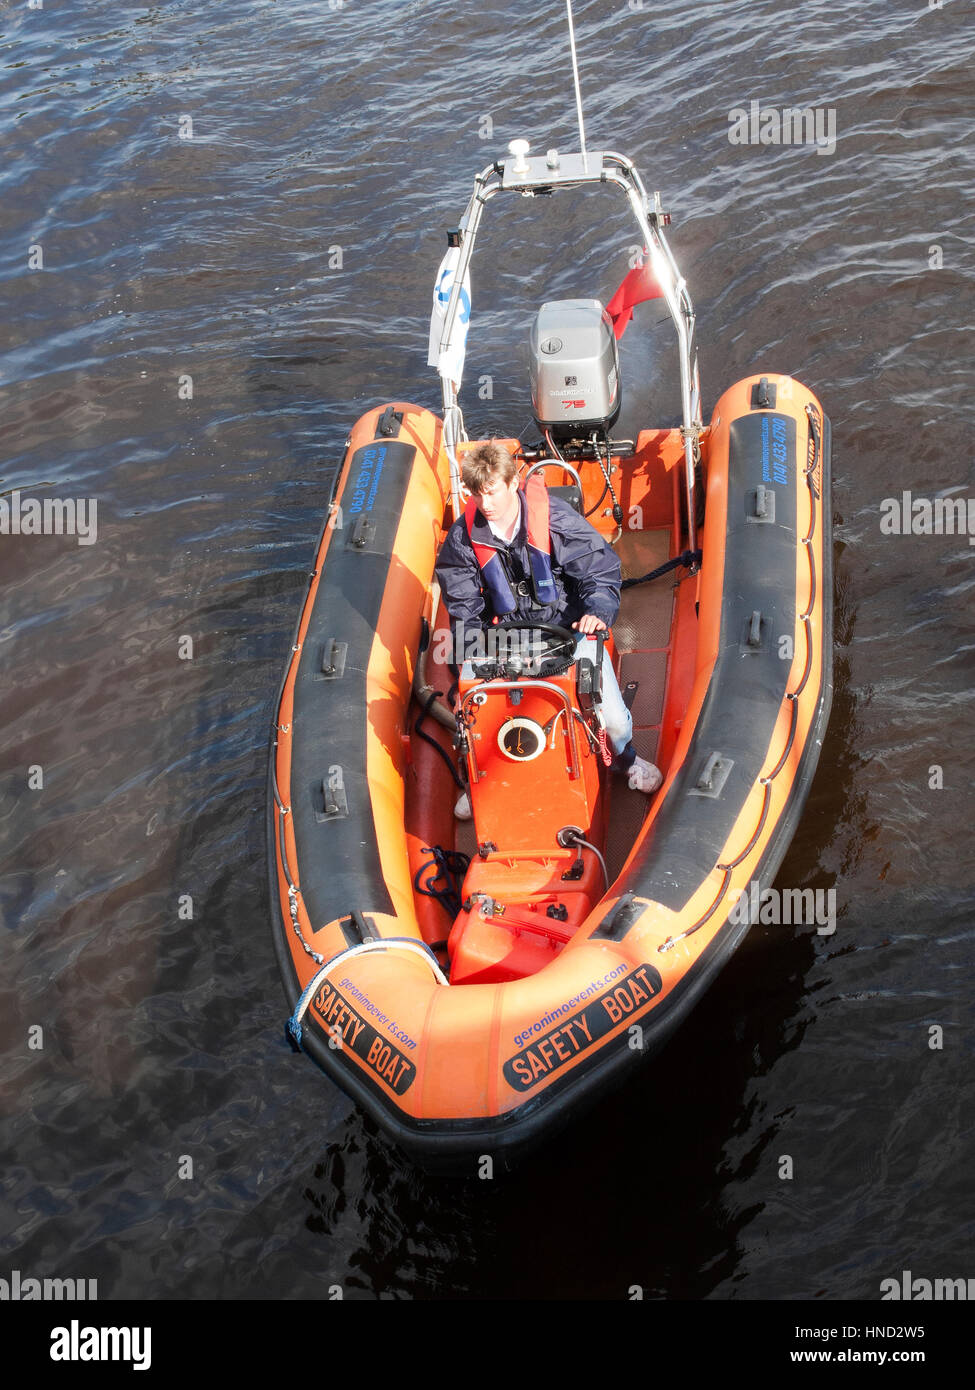 Bateau de sécurité sur les événements nautiques sur la rivière Clyde Glasgow. Banque D'Images